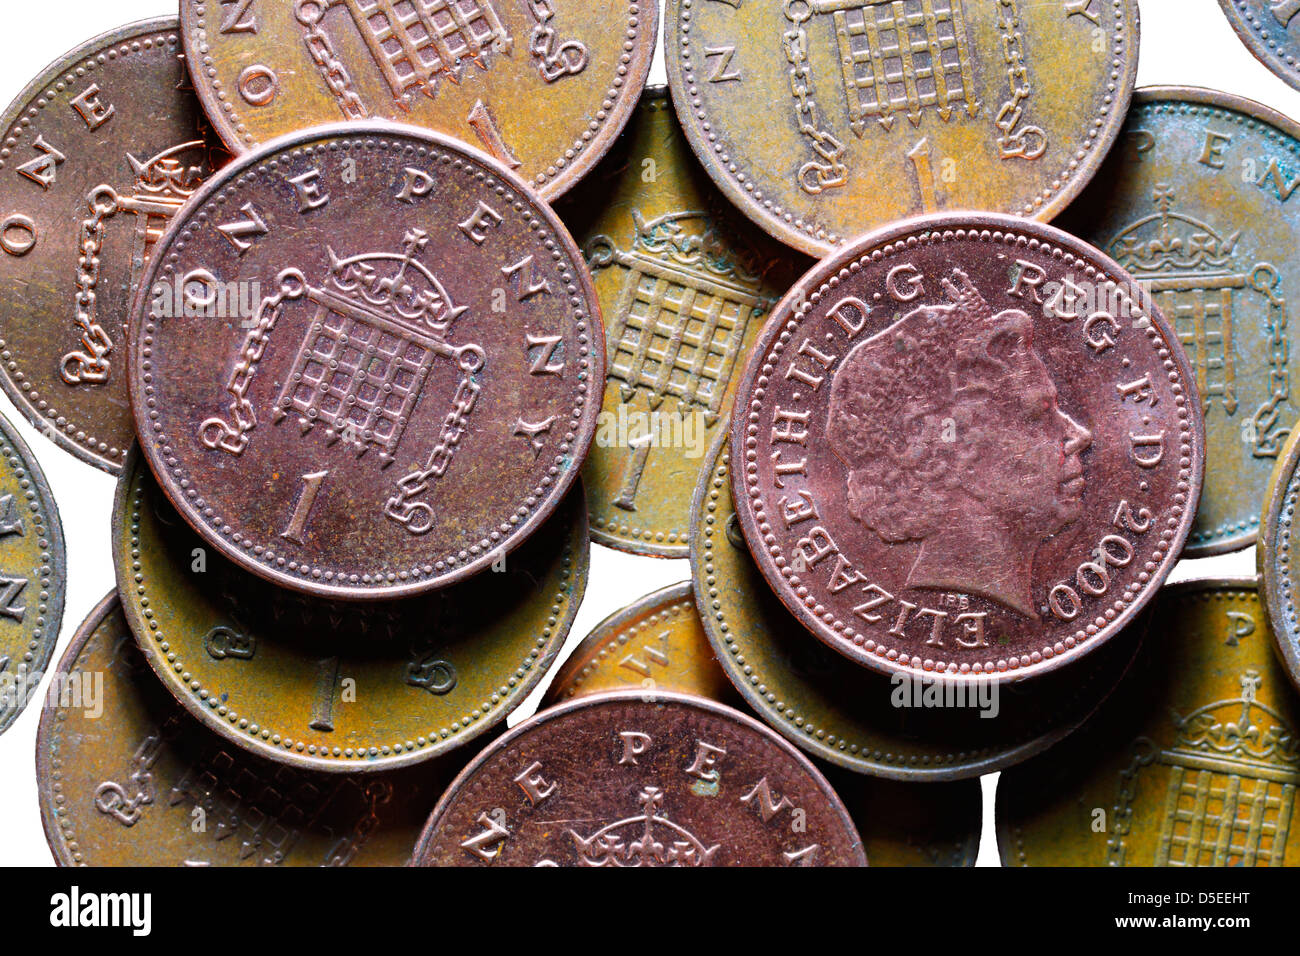 Pile de pièces de un cent, au Royaume-Uni, sur fond blanc Banque D'Images